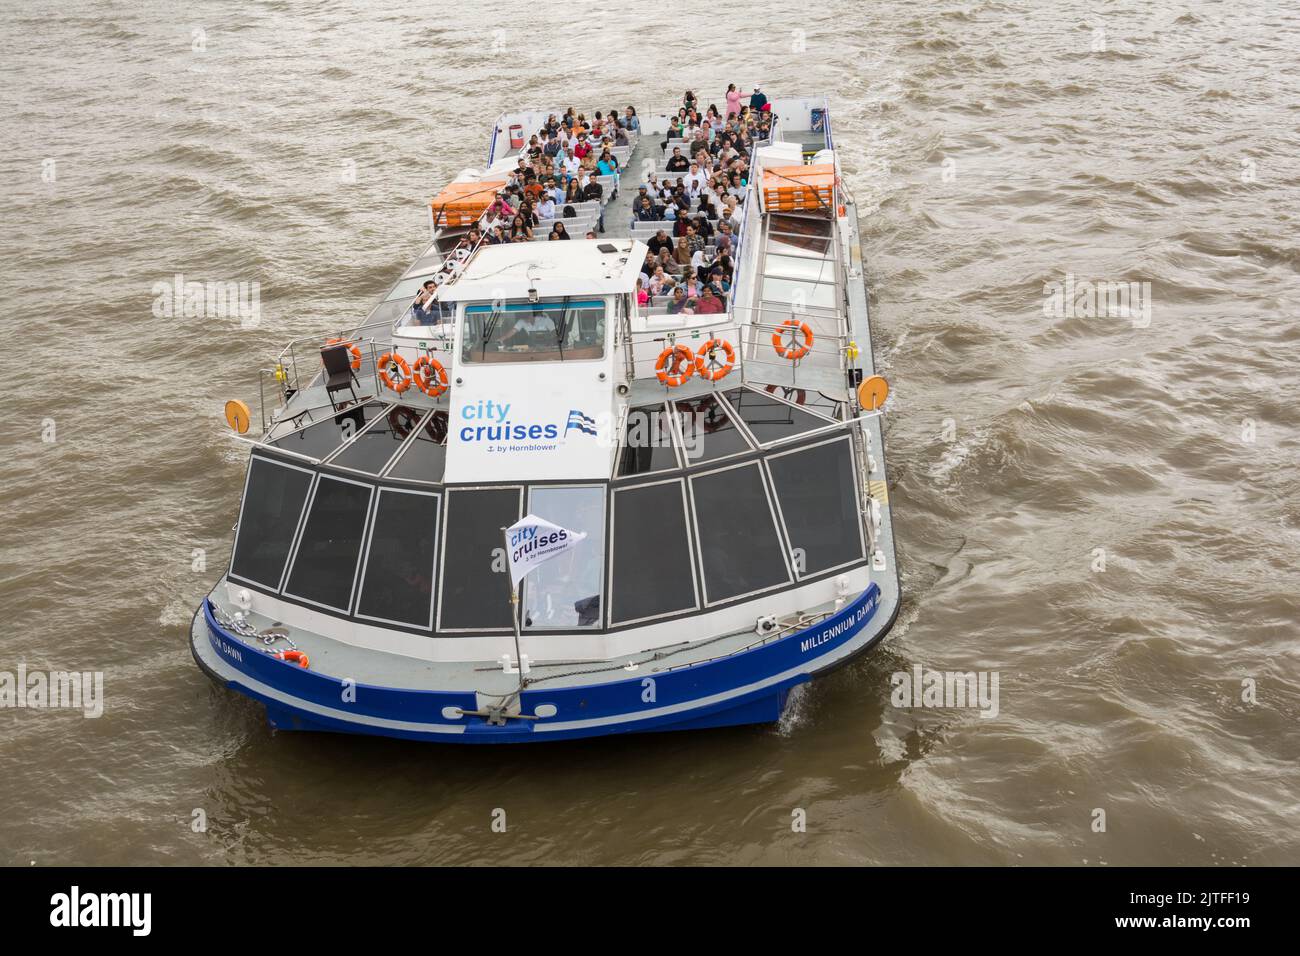 Gros plan des touristes à bord du bateau de plaisance Millennium Dawn a City Cruises sur la Tamise, Londres, Angleterre, Royaume-Uni Banque D'Images